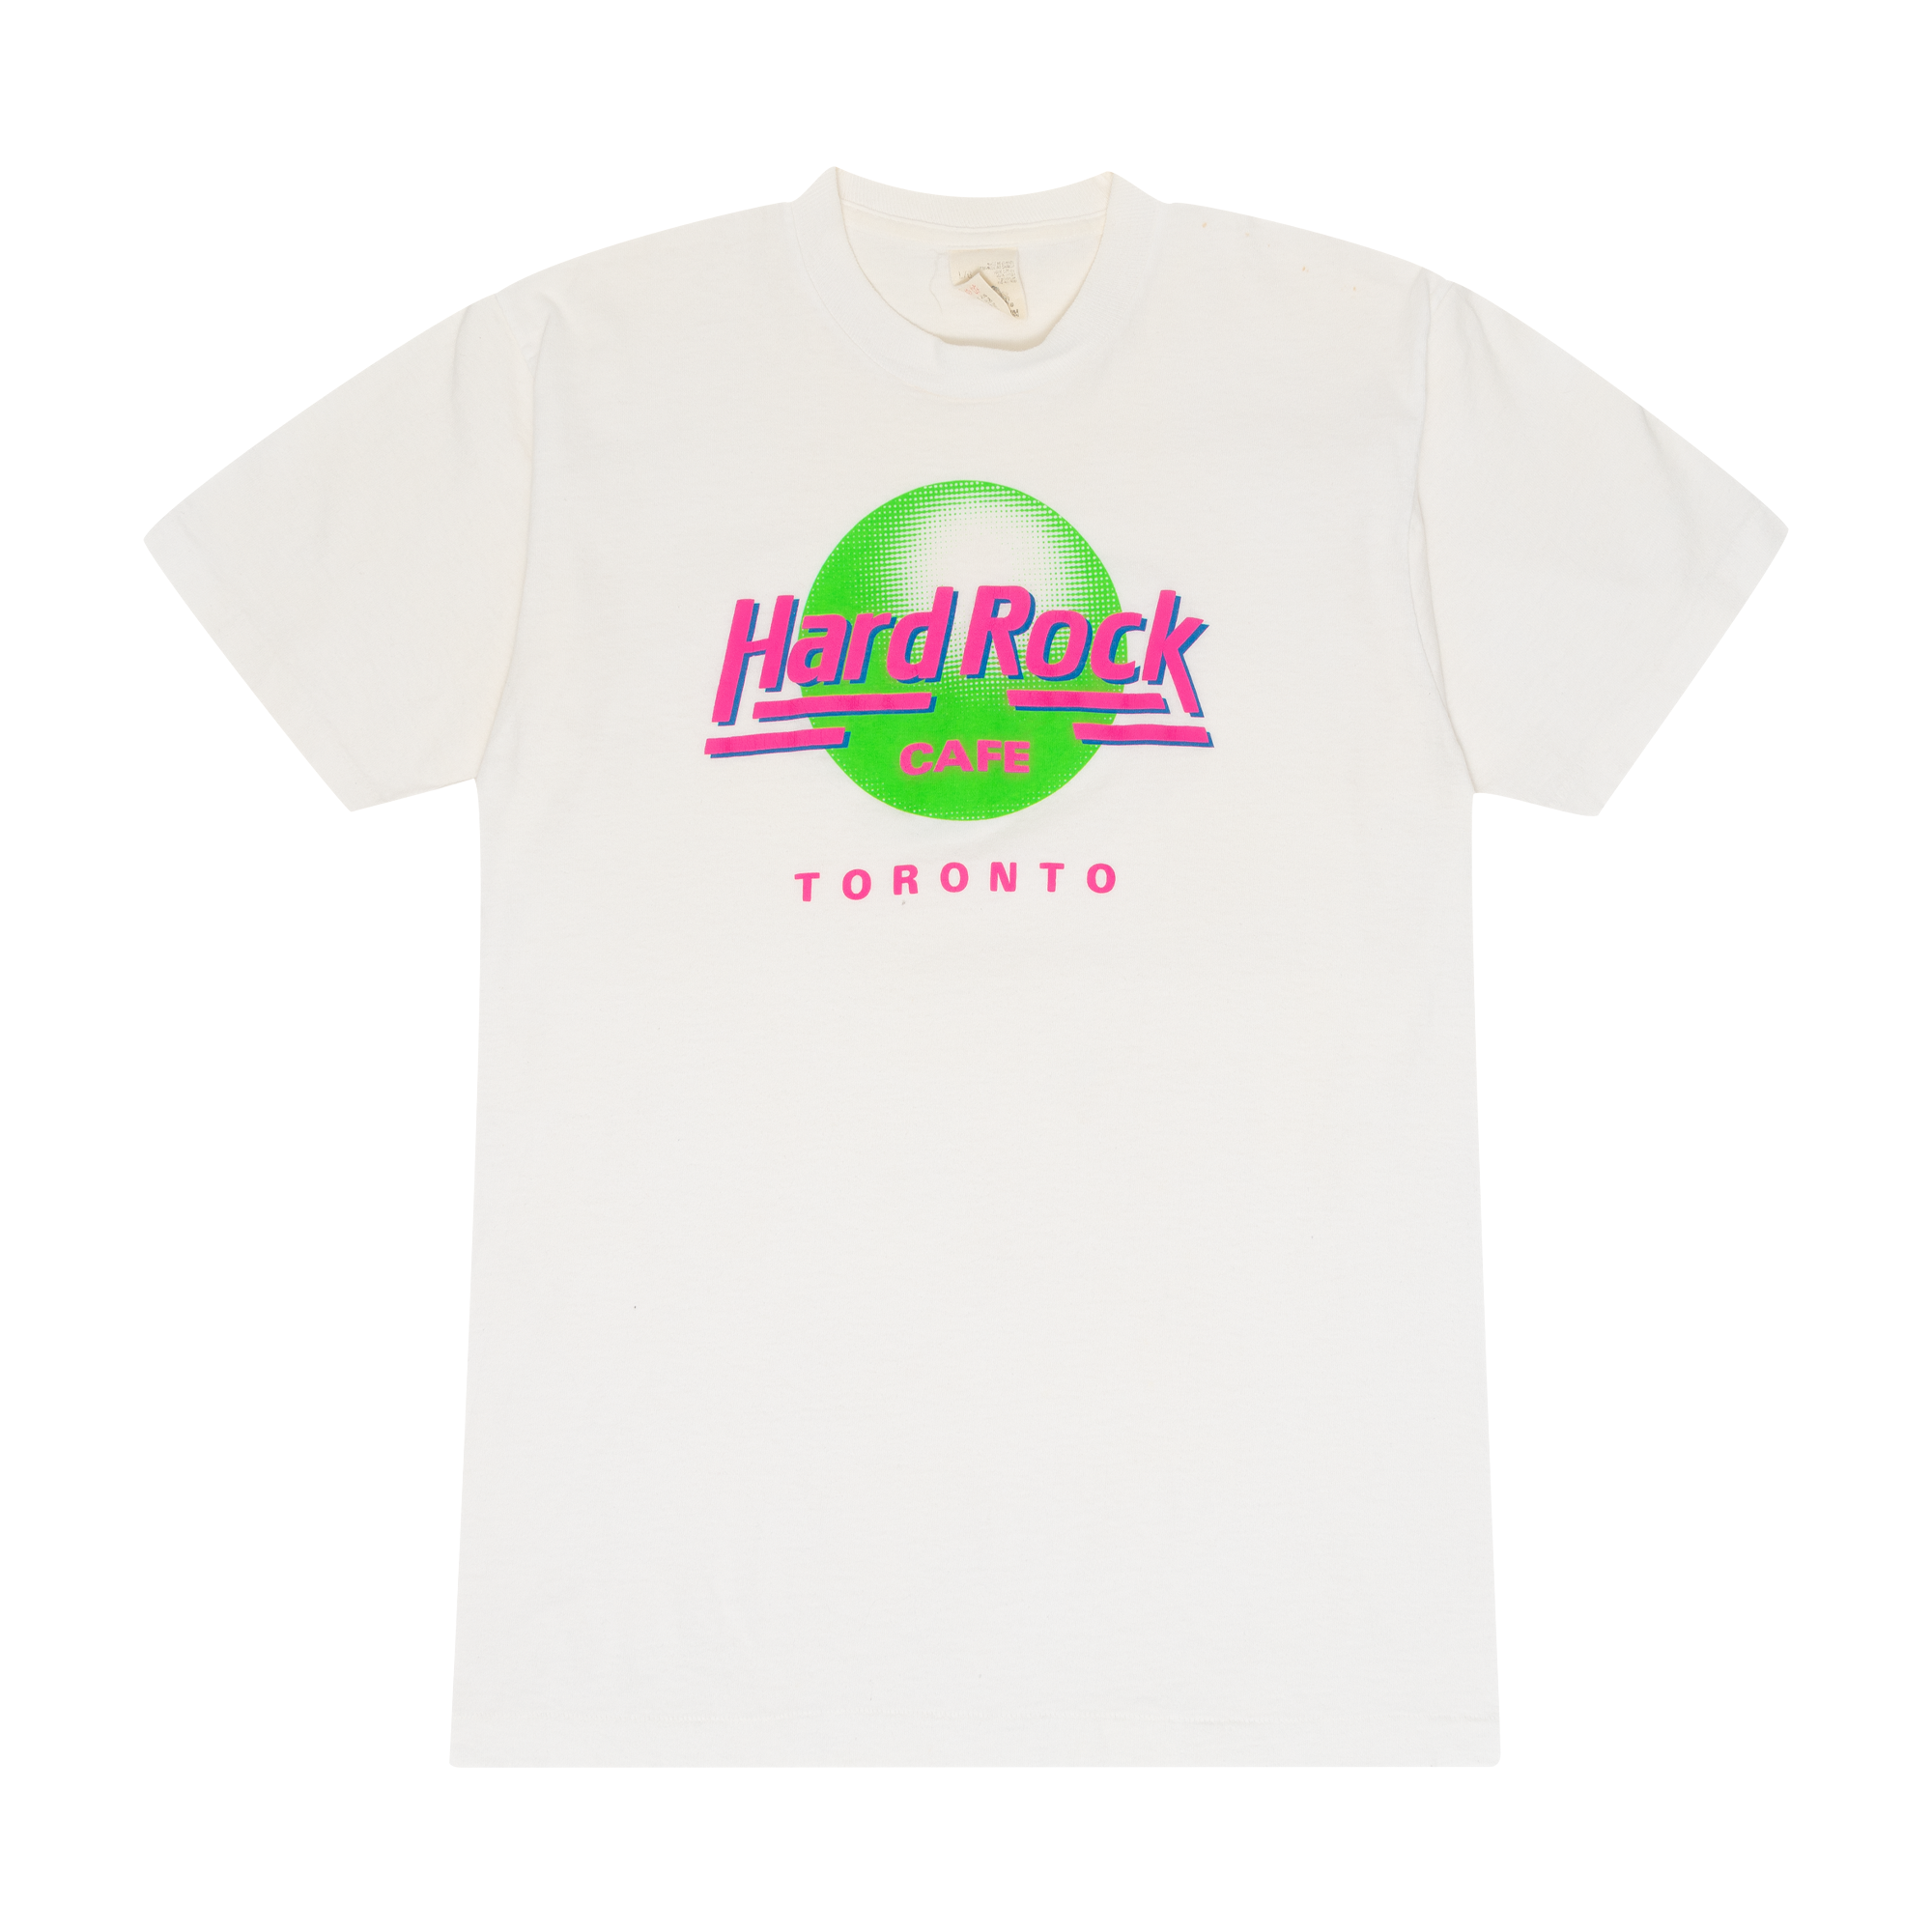 Hard Rock Cafe "Toronto" Souvenir Tee White-PLUS